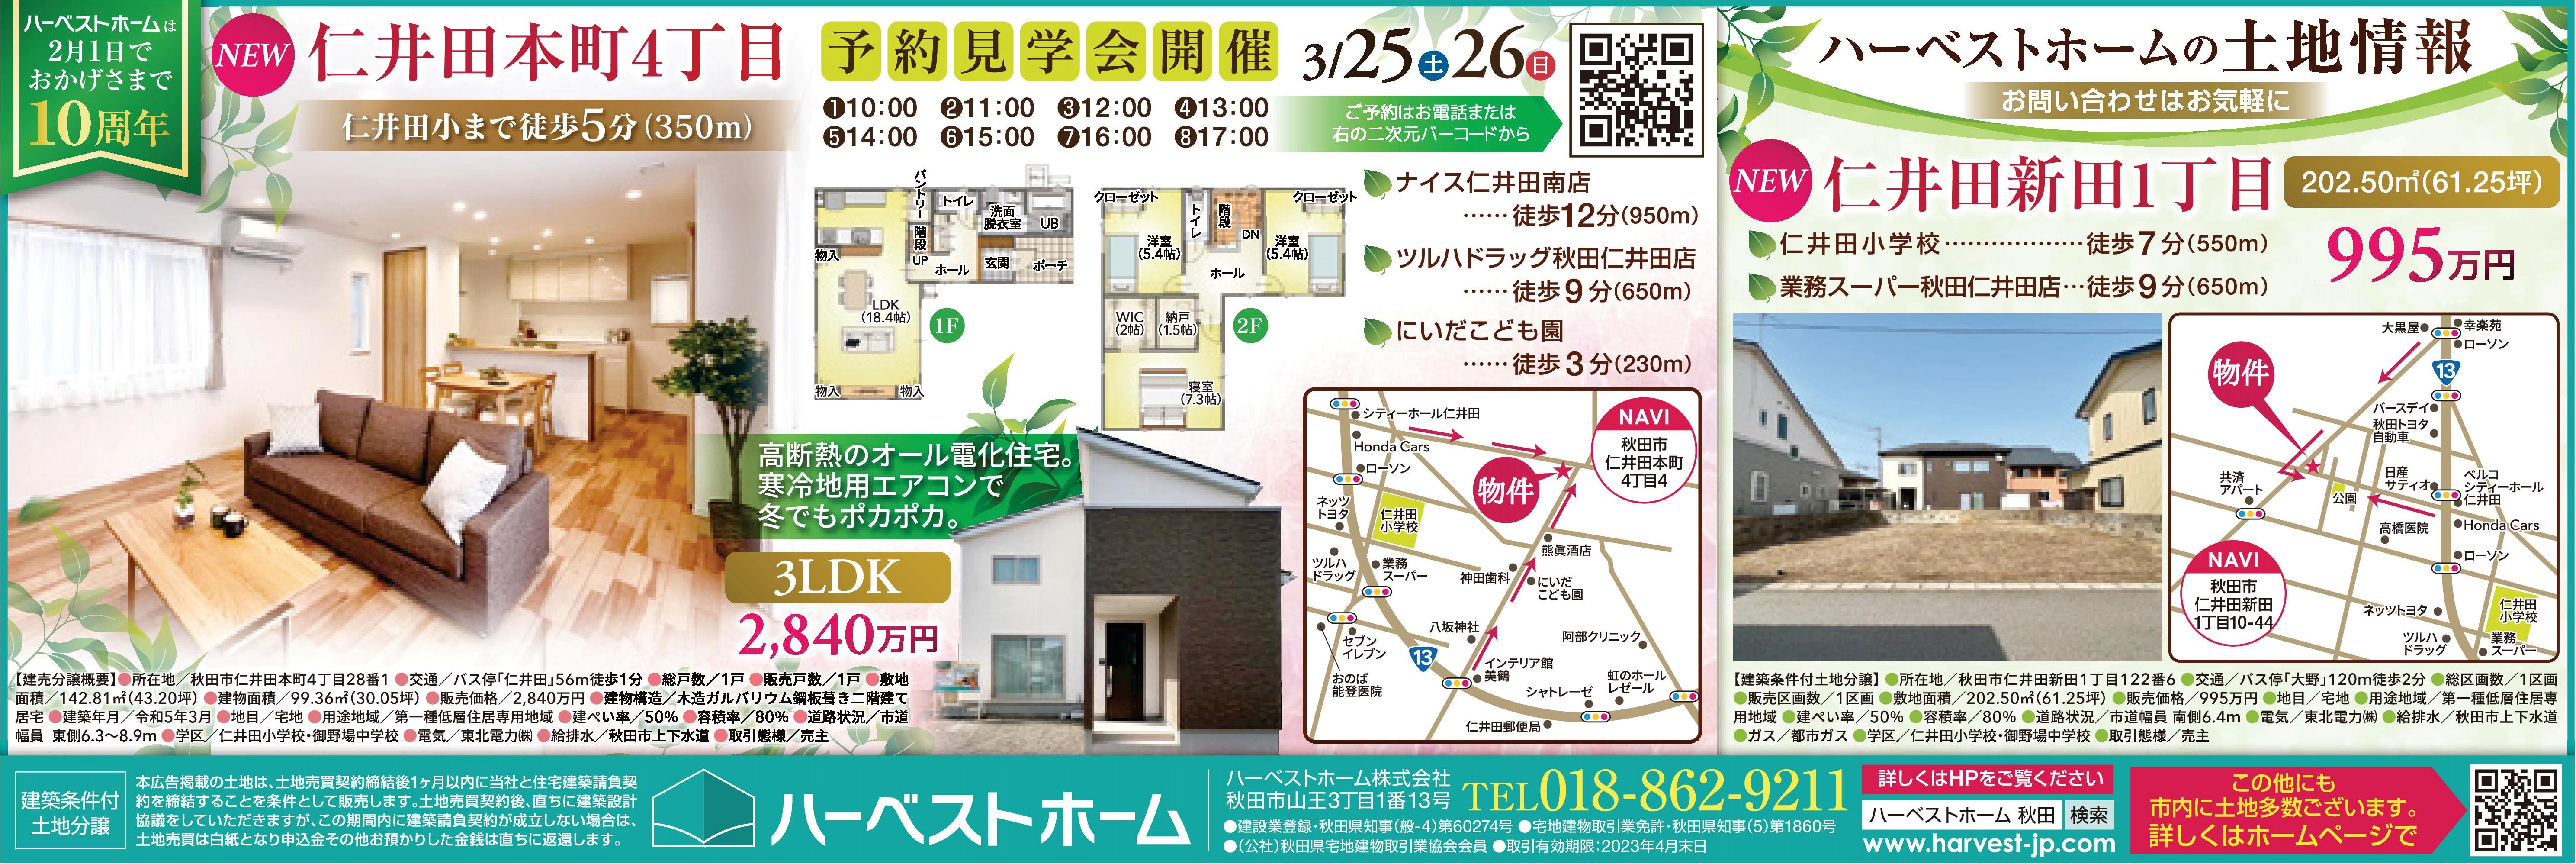 『建売住宅 / 仁井田本町4丁目』 見学会を開催します。「仁井田新田」に新しい土地も出ました。